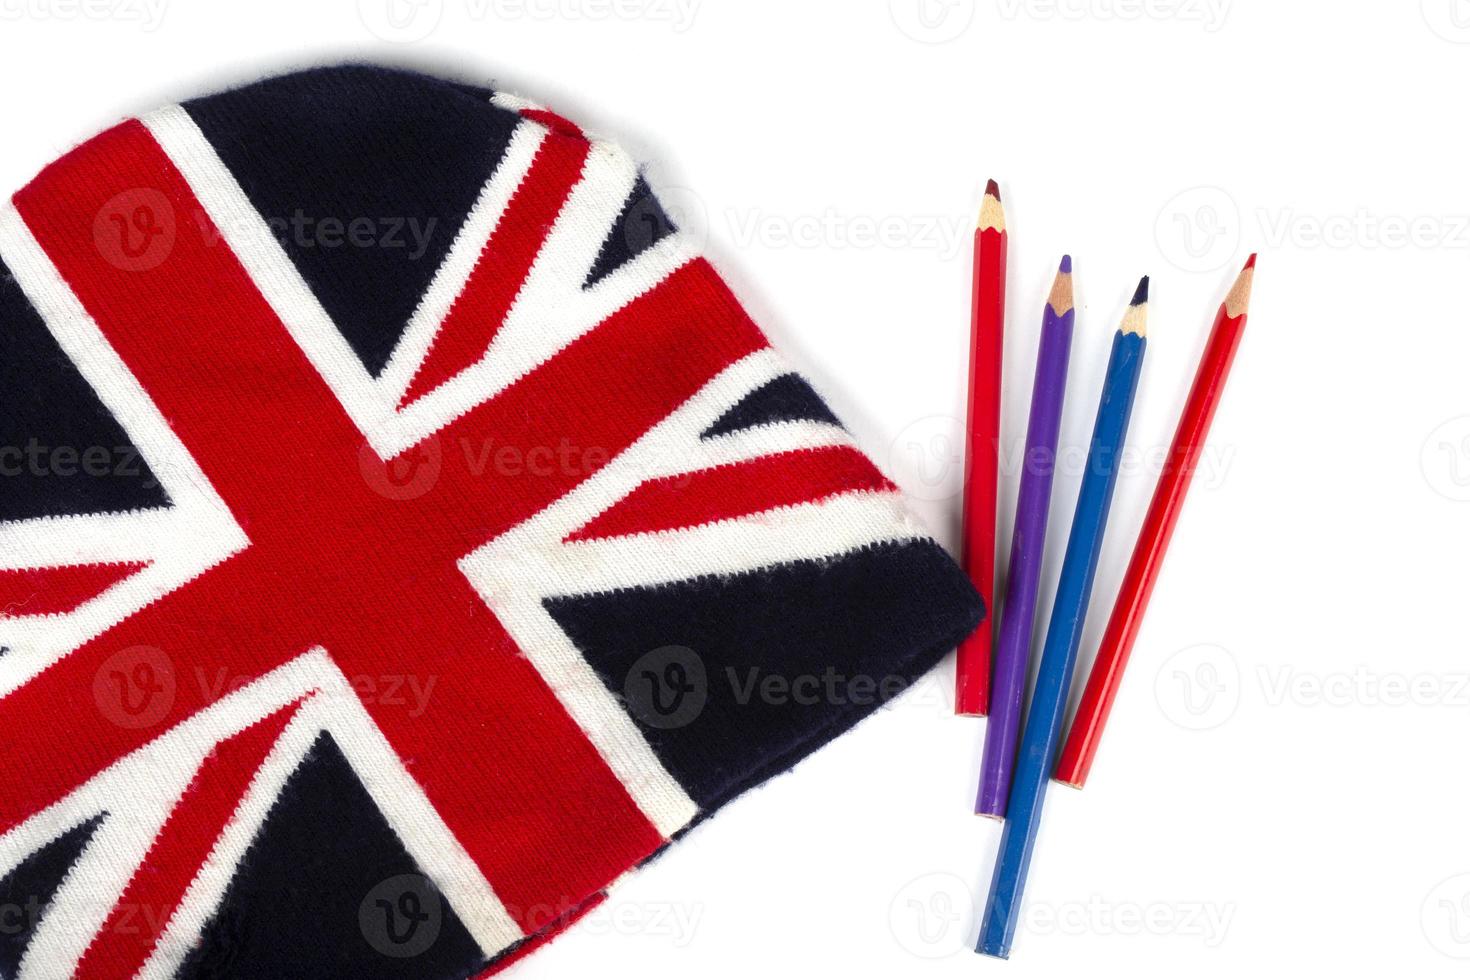 chapéu de malha de inverno com um padrão da bandeira do reino unido e lápis de cor sobre um fundo branco. foto